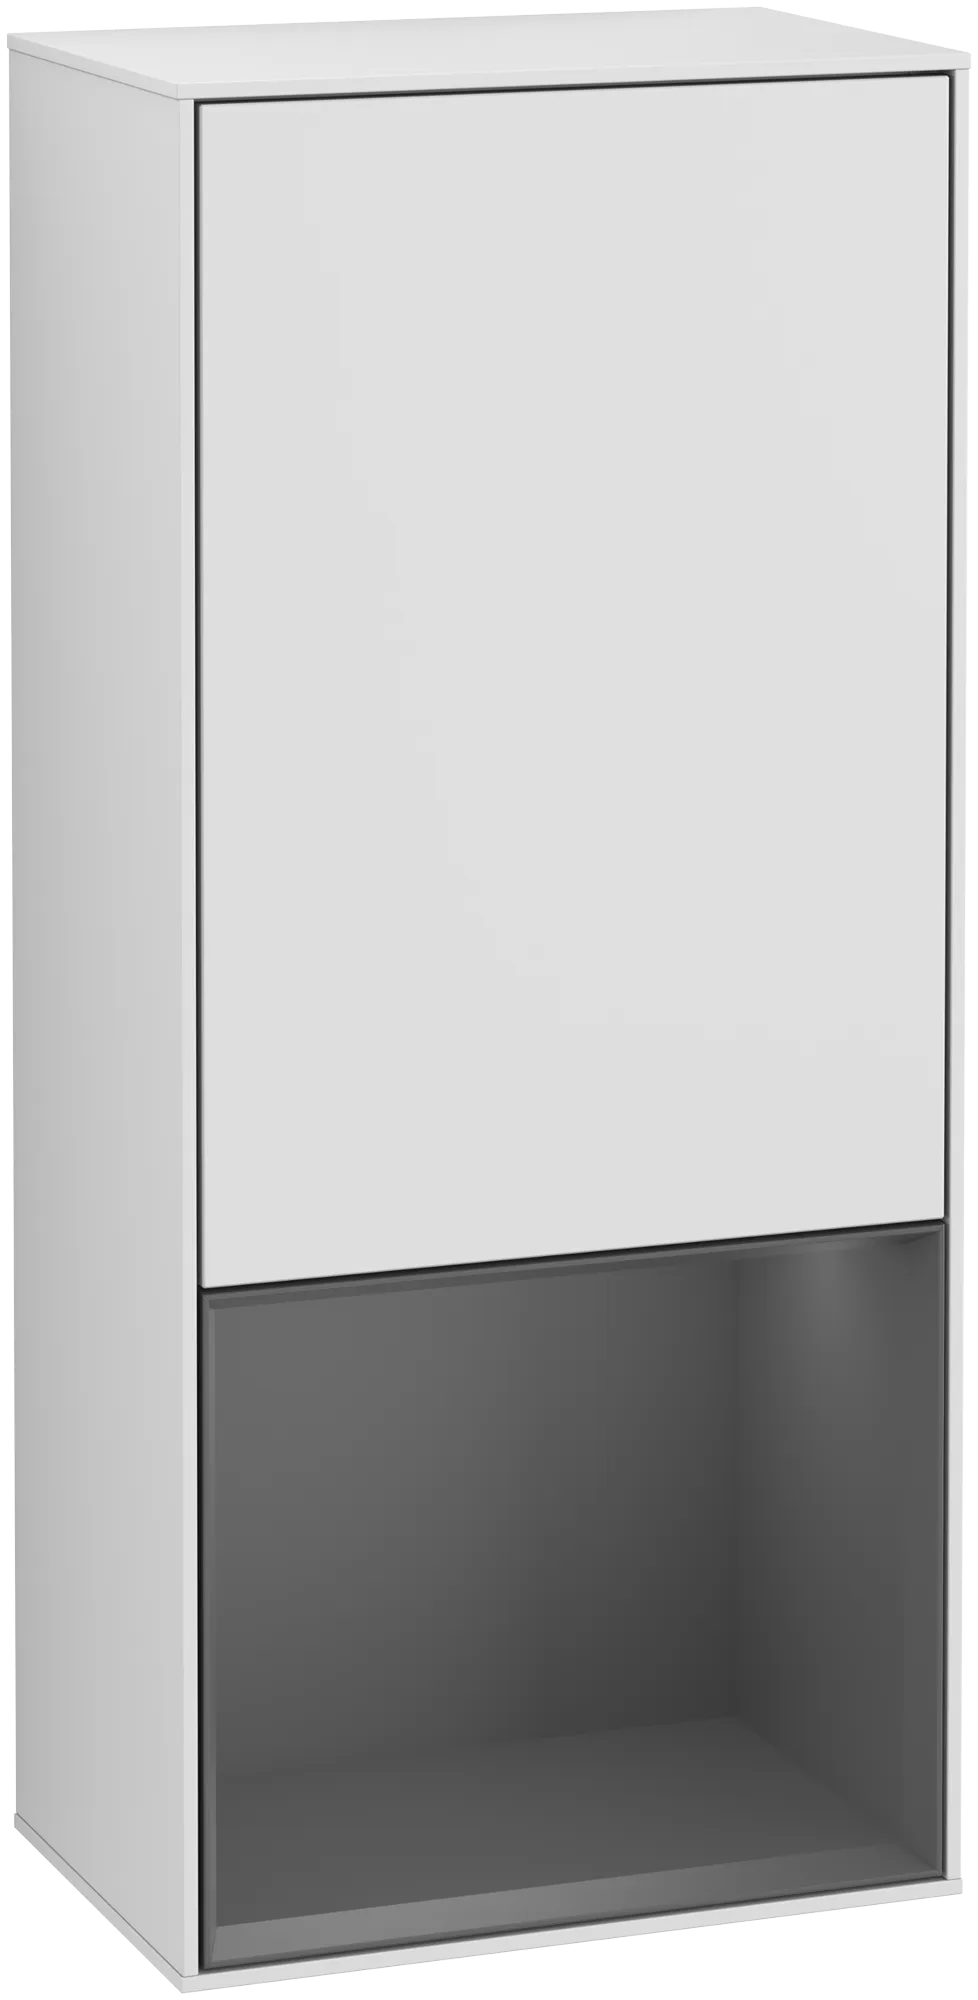 Bild von VILLEROY BOCH Finion Seitenschrank, mit Beleuchtung, 1 Tür, 418 x 936 x 270 mm, White Matt Lacquer / Anthracite Matt Lacquer #G550GKMT